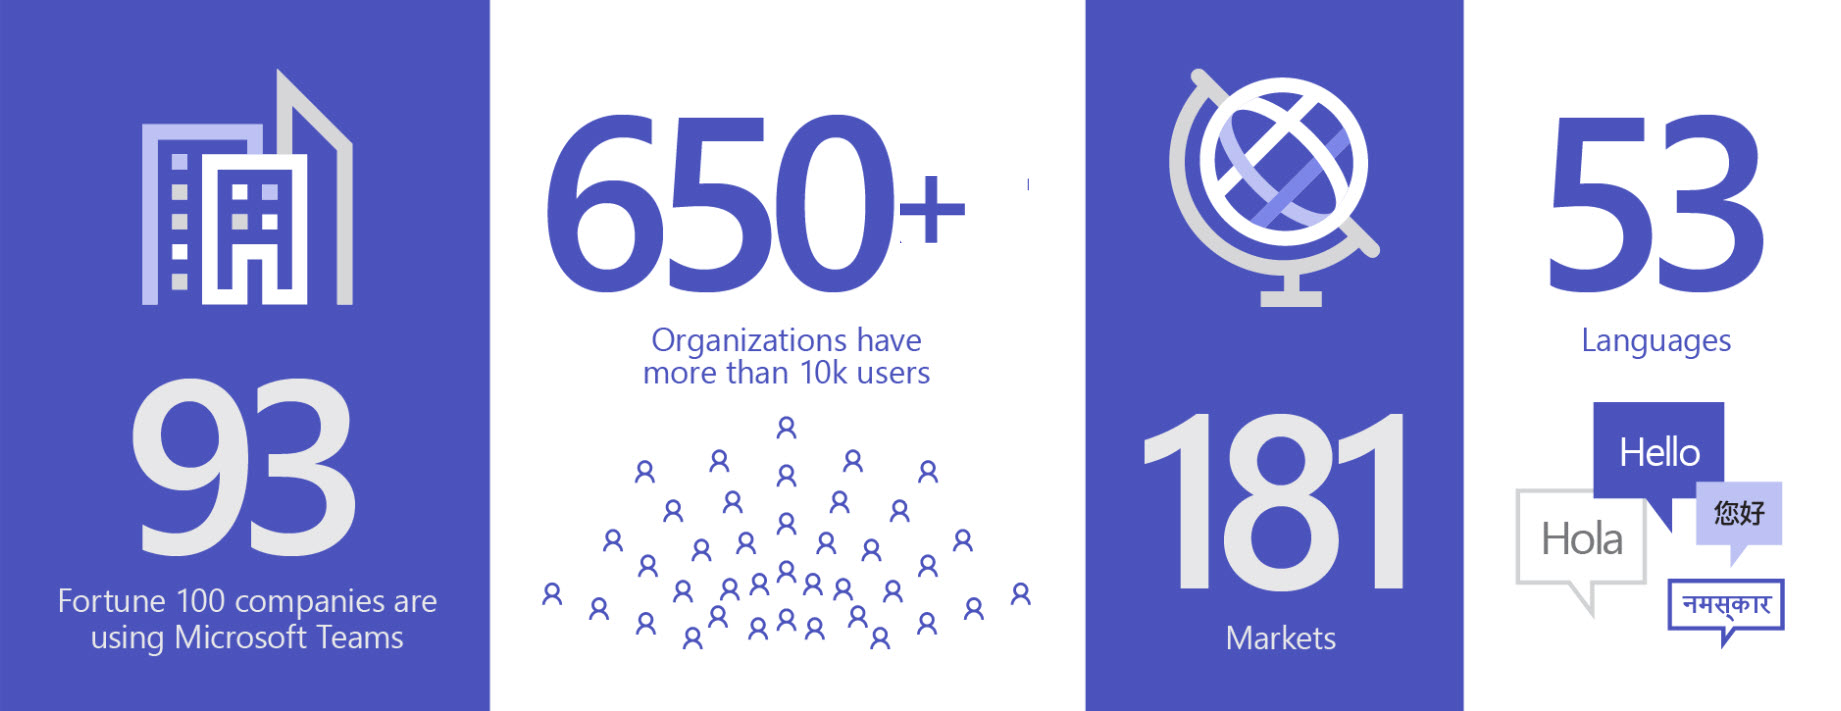 Gambar yang menampilkan 93 organisasi menggunakan Teams, 650+ organisasi memiliki lebih dari 10K pengguna, di 181 pasar, dan 53 bahasa.